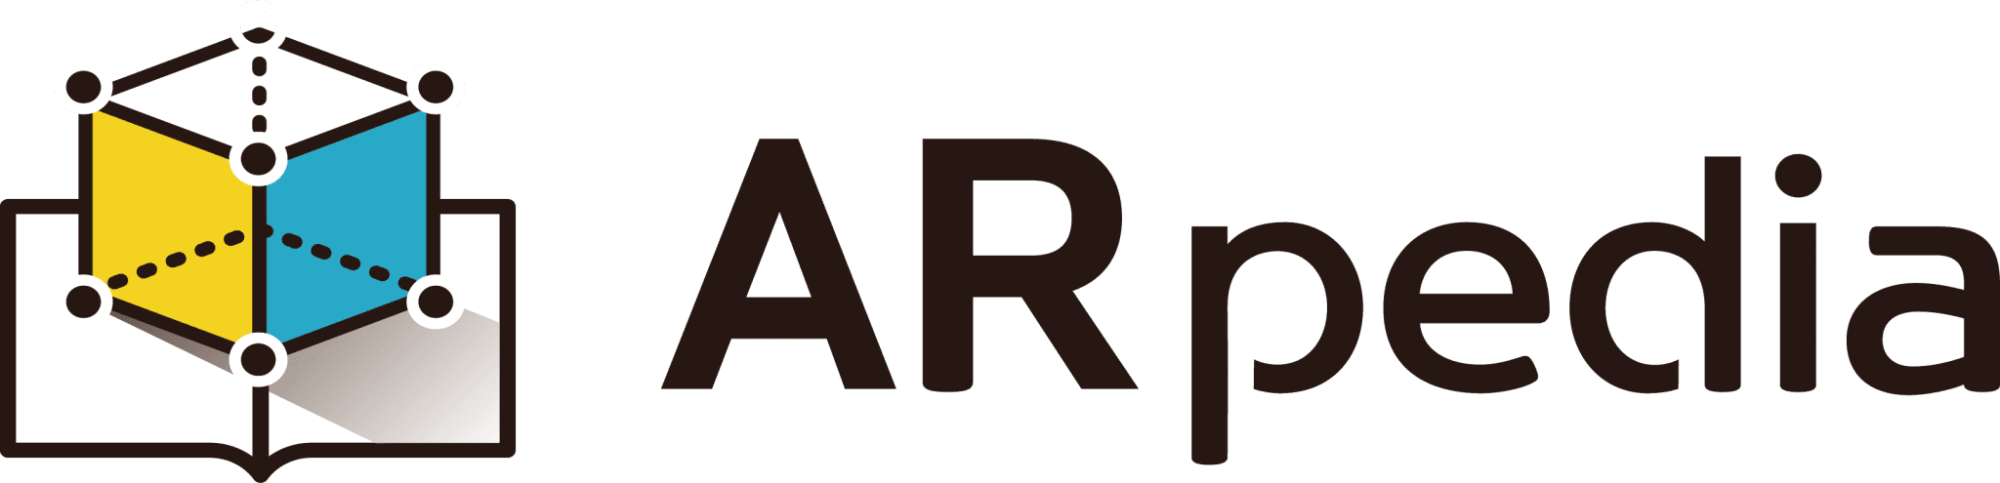 ARpedia logo.png